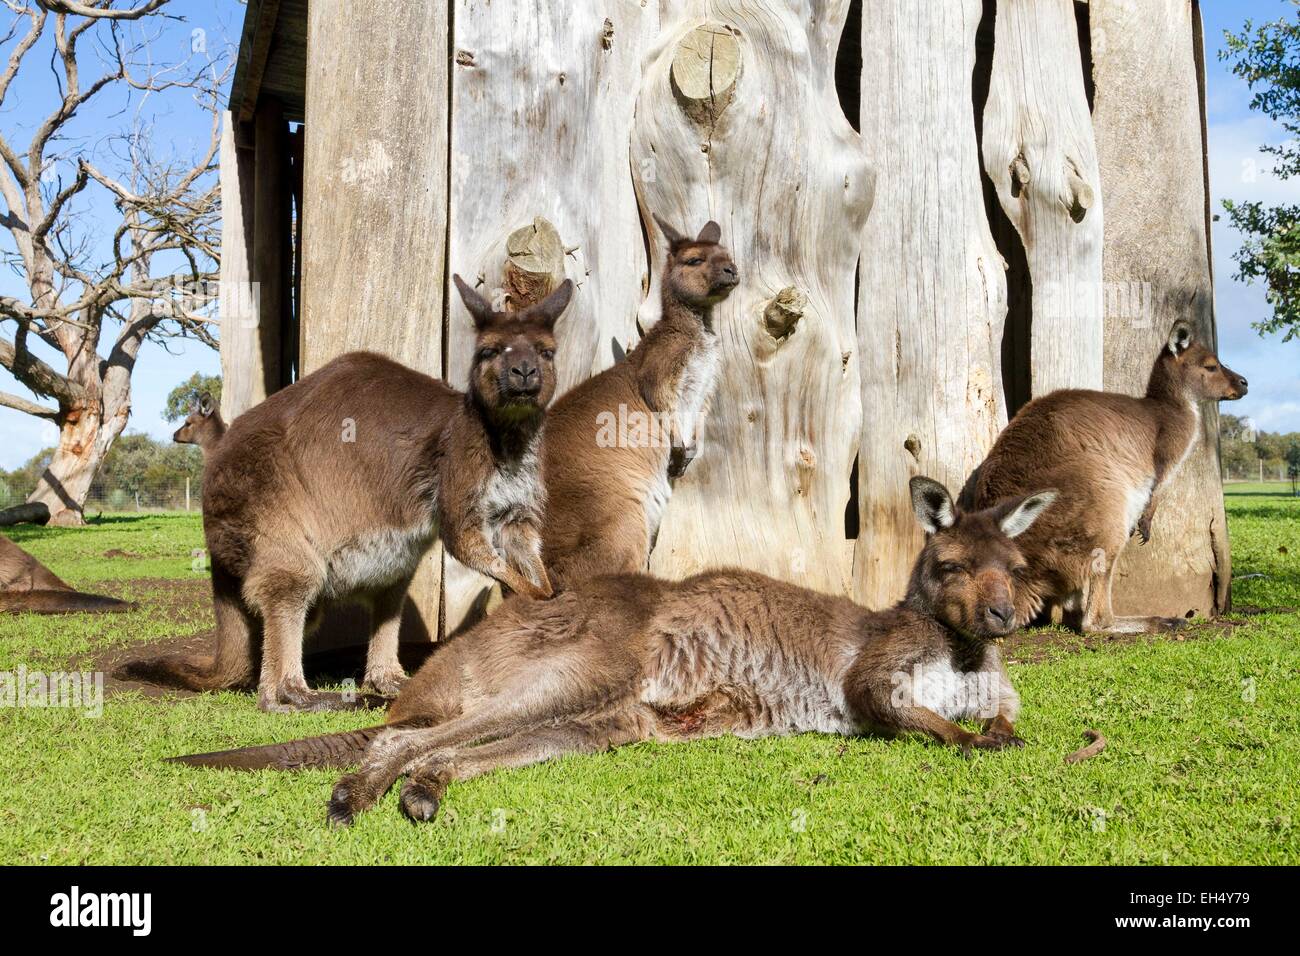 Australien, South Australia, Kangaroo Island, Unterart des westlichen grau Kangaroo endemisch auf Kangaroo Island (Macropus Fuliginosus Fuliginosus) in einem park Stockfoto